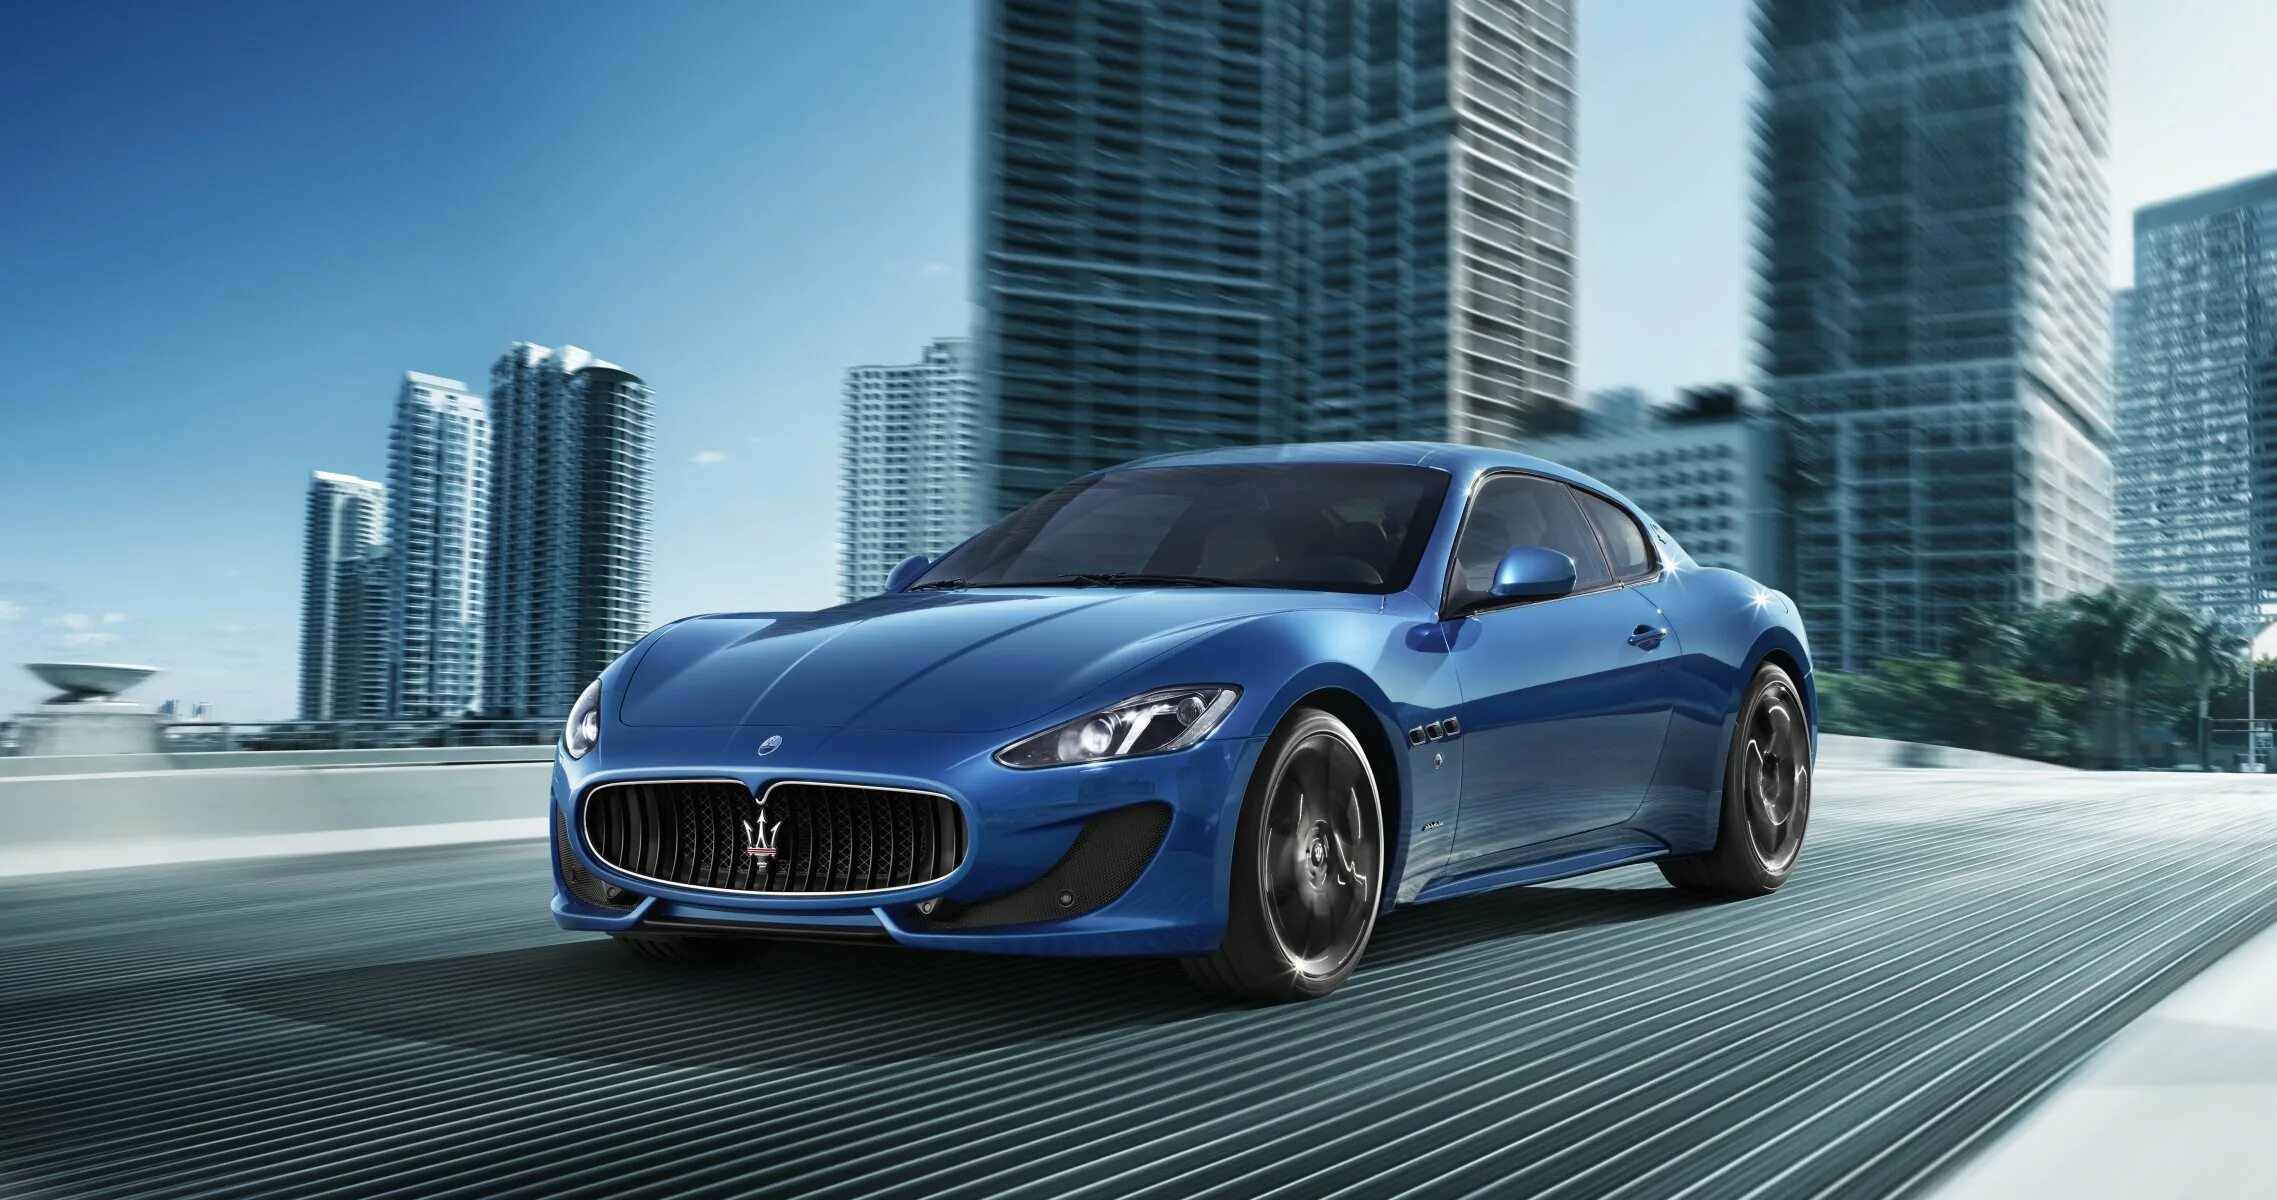 Мазерати GRANTURISMO. Maserati GRANTURISMO синий. Maserati GRANTURISMO Sport. Мазерати Гран Туризмо 2019. Авто мазерати